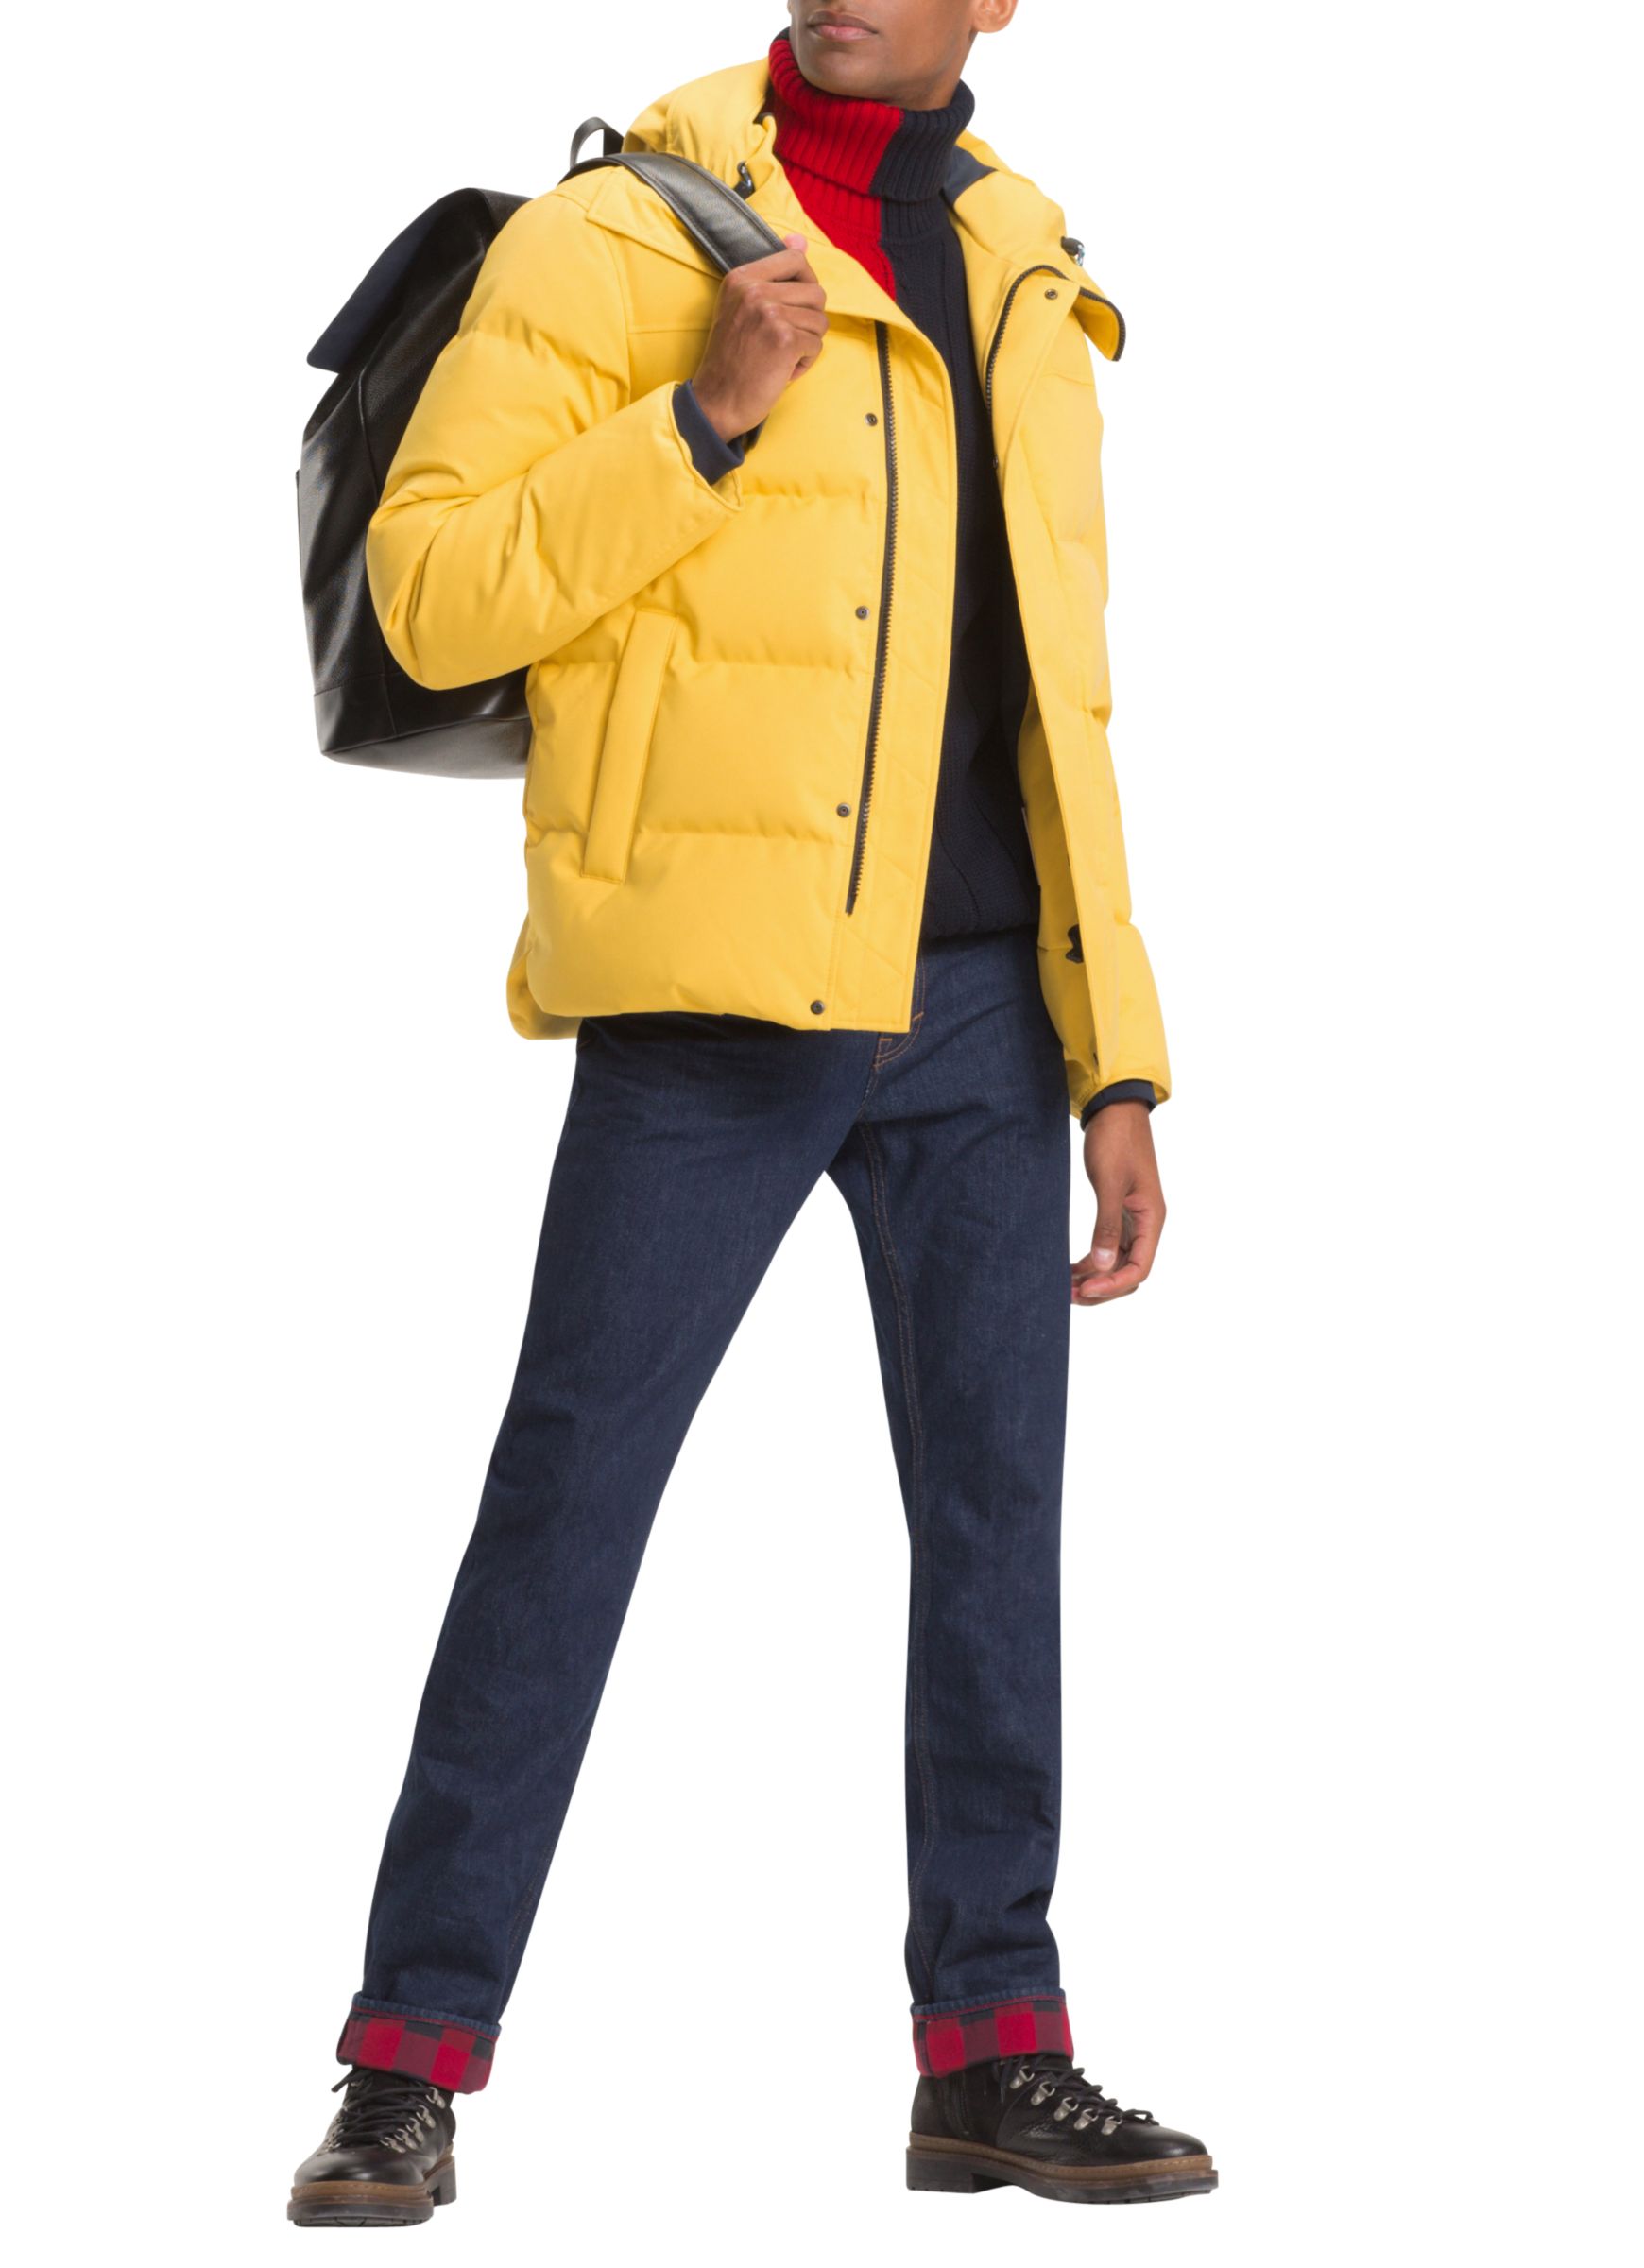 hilfiger jacket yellow